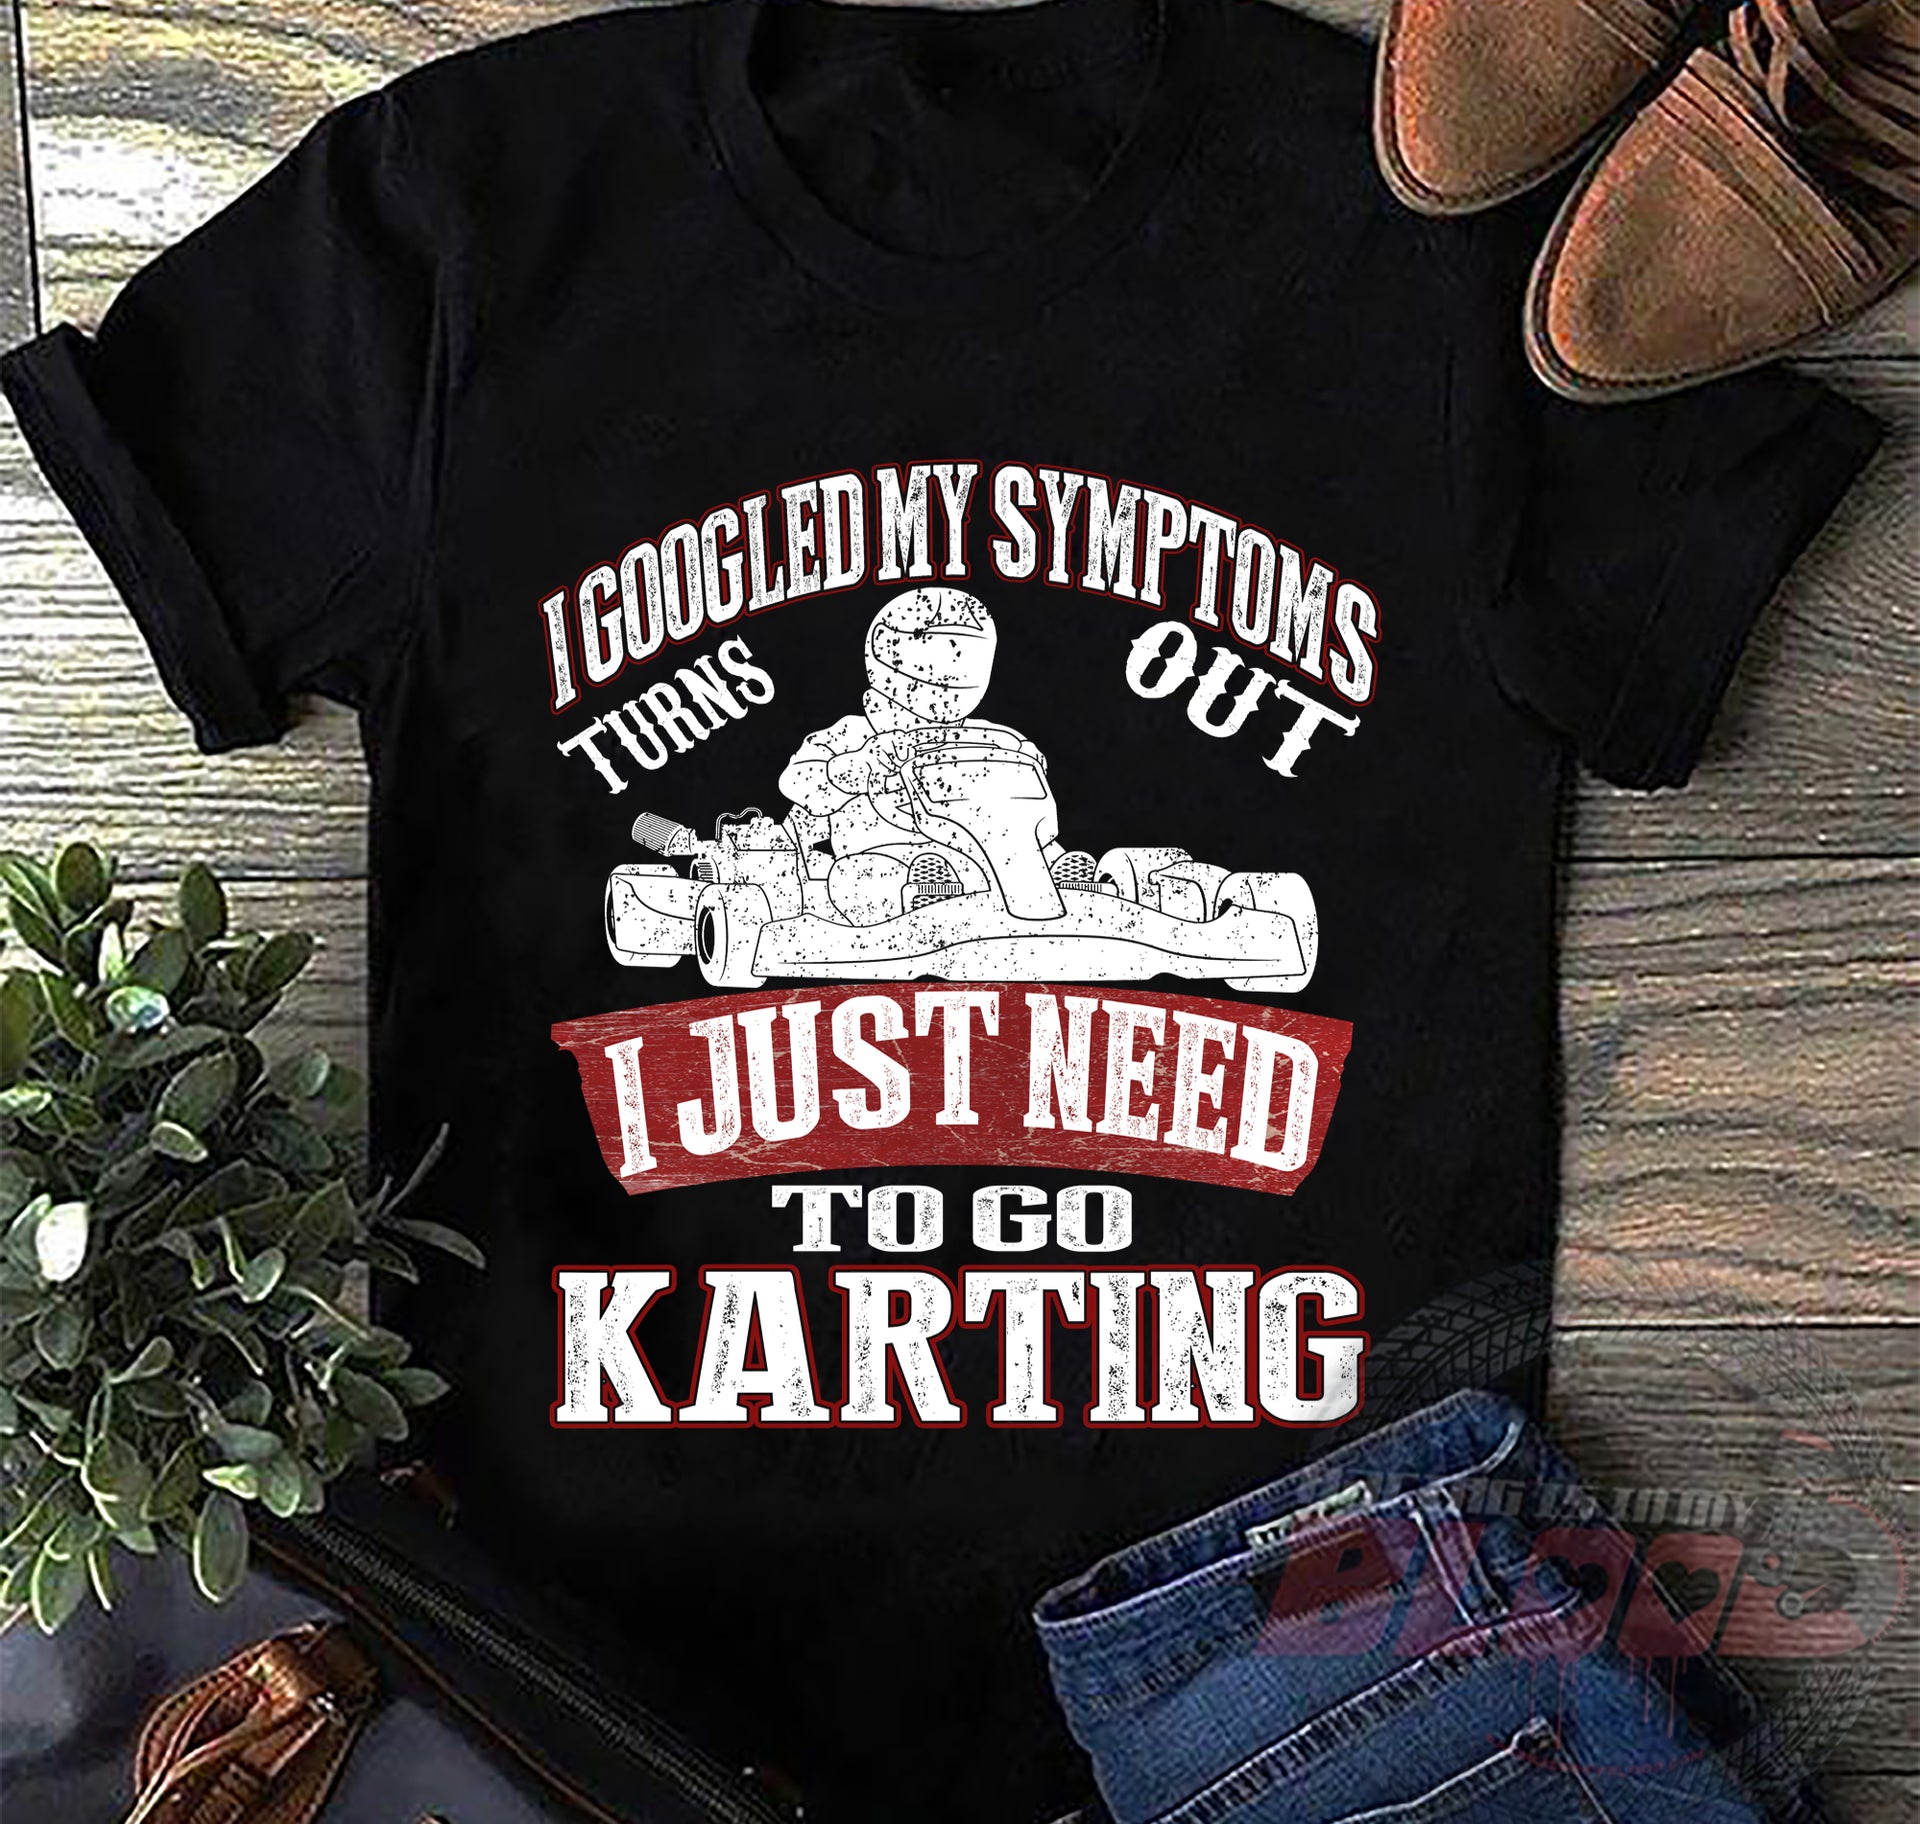 karting t shirts